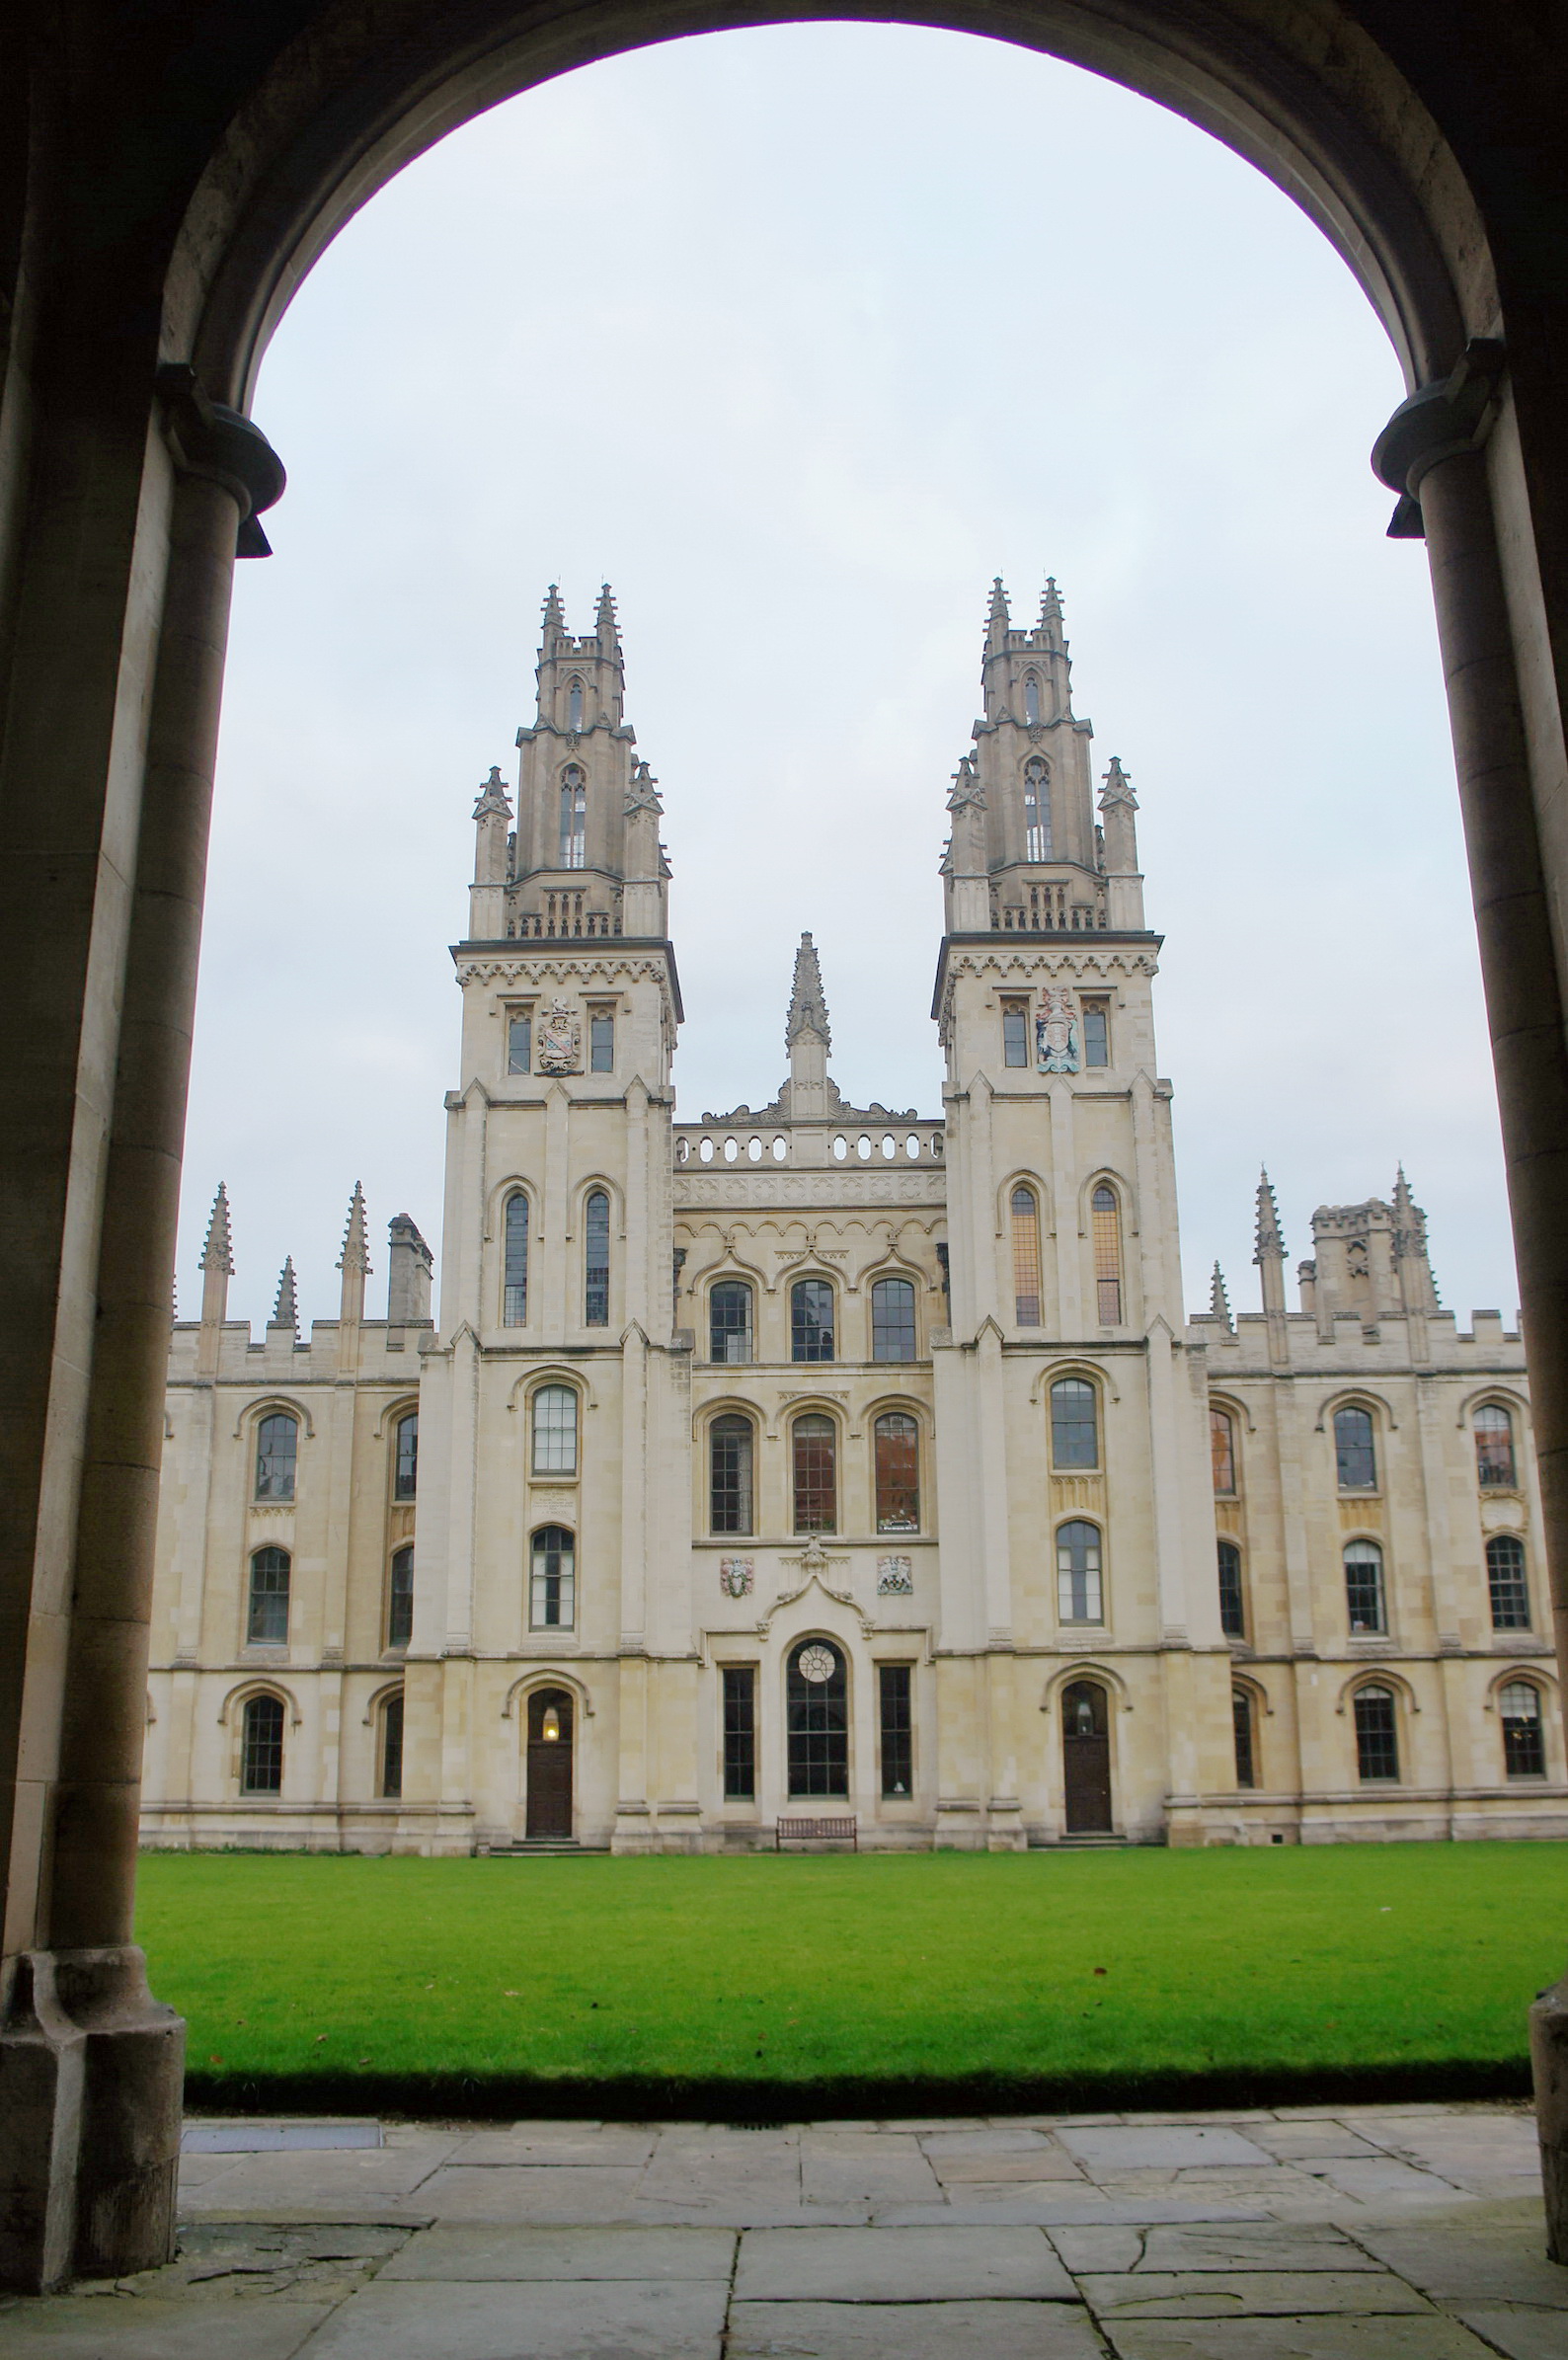 Campus Tour at Oxford, UK - expstudyuk